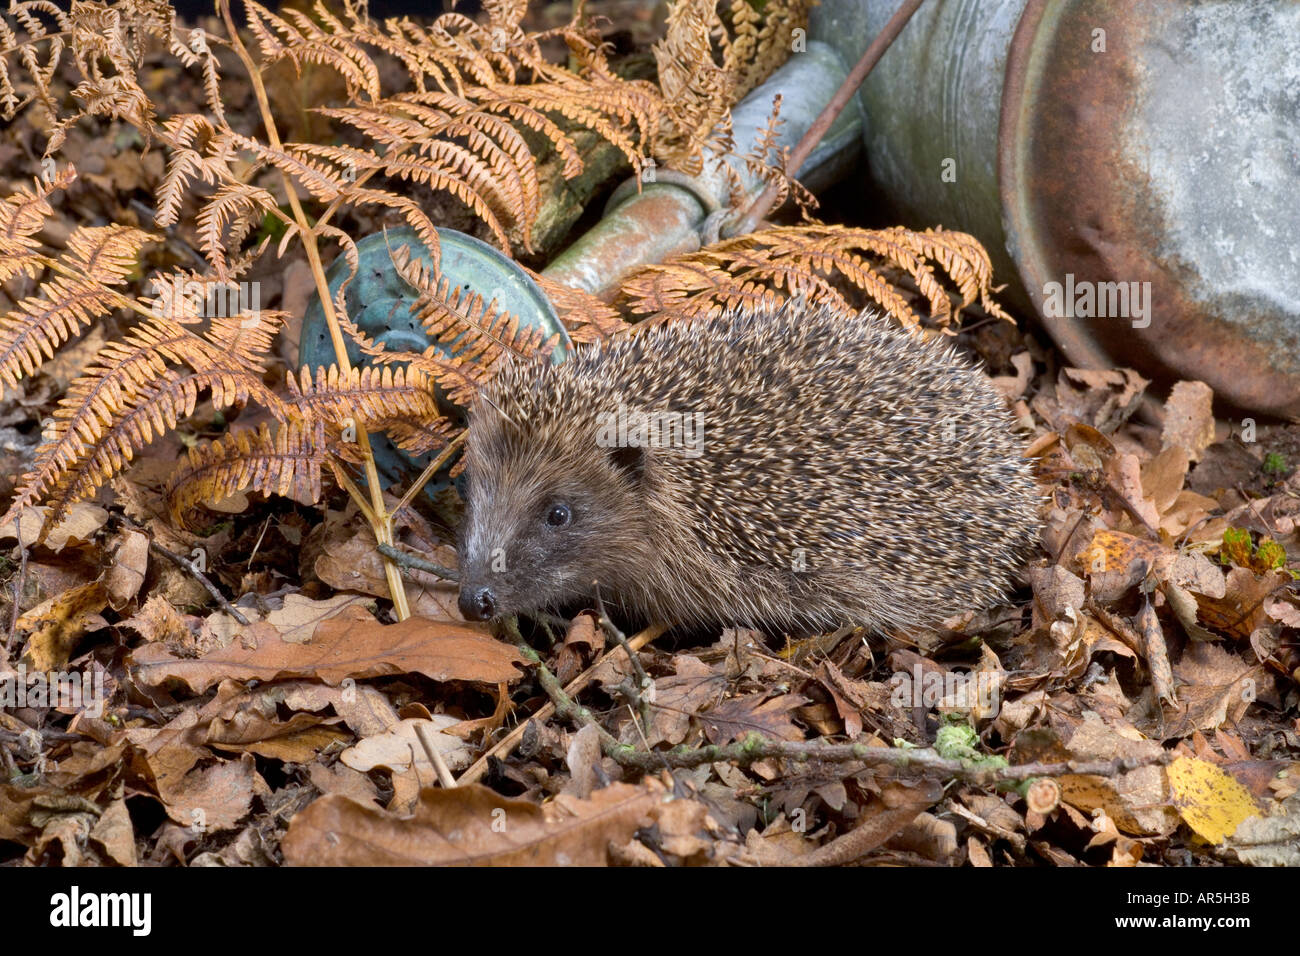 Hedgehog Erinaceus europaeus and Watering can in garden Stock Photo